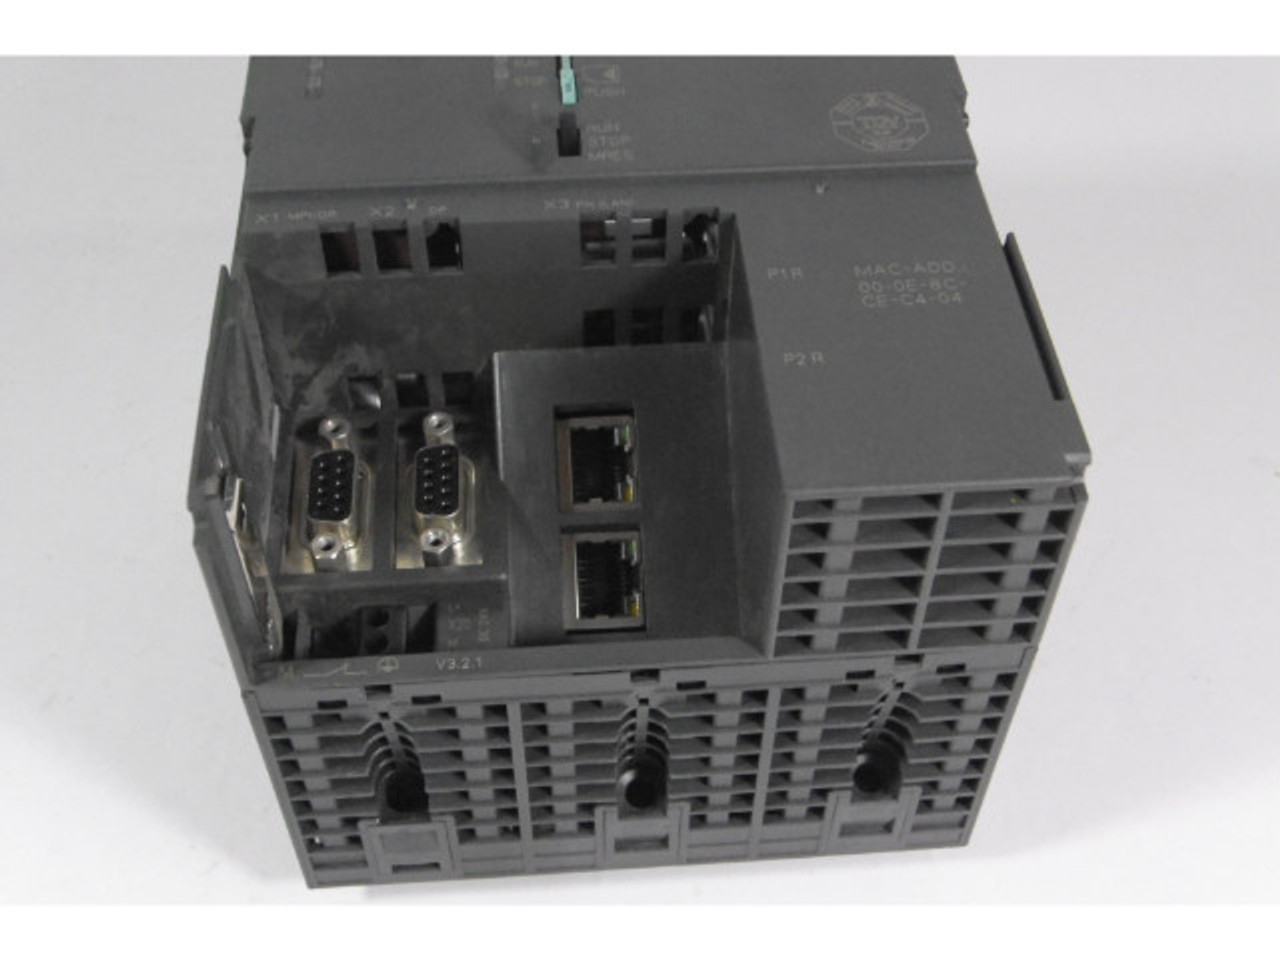 Siemens 6ES7-318-3FL01-0AB0 CPU Module USED